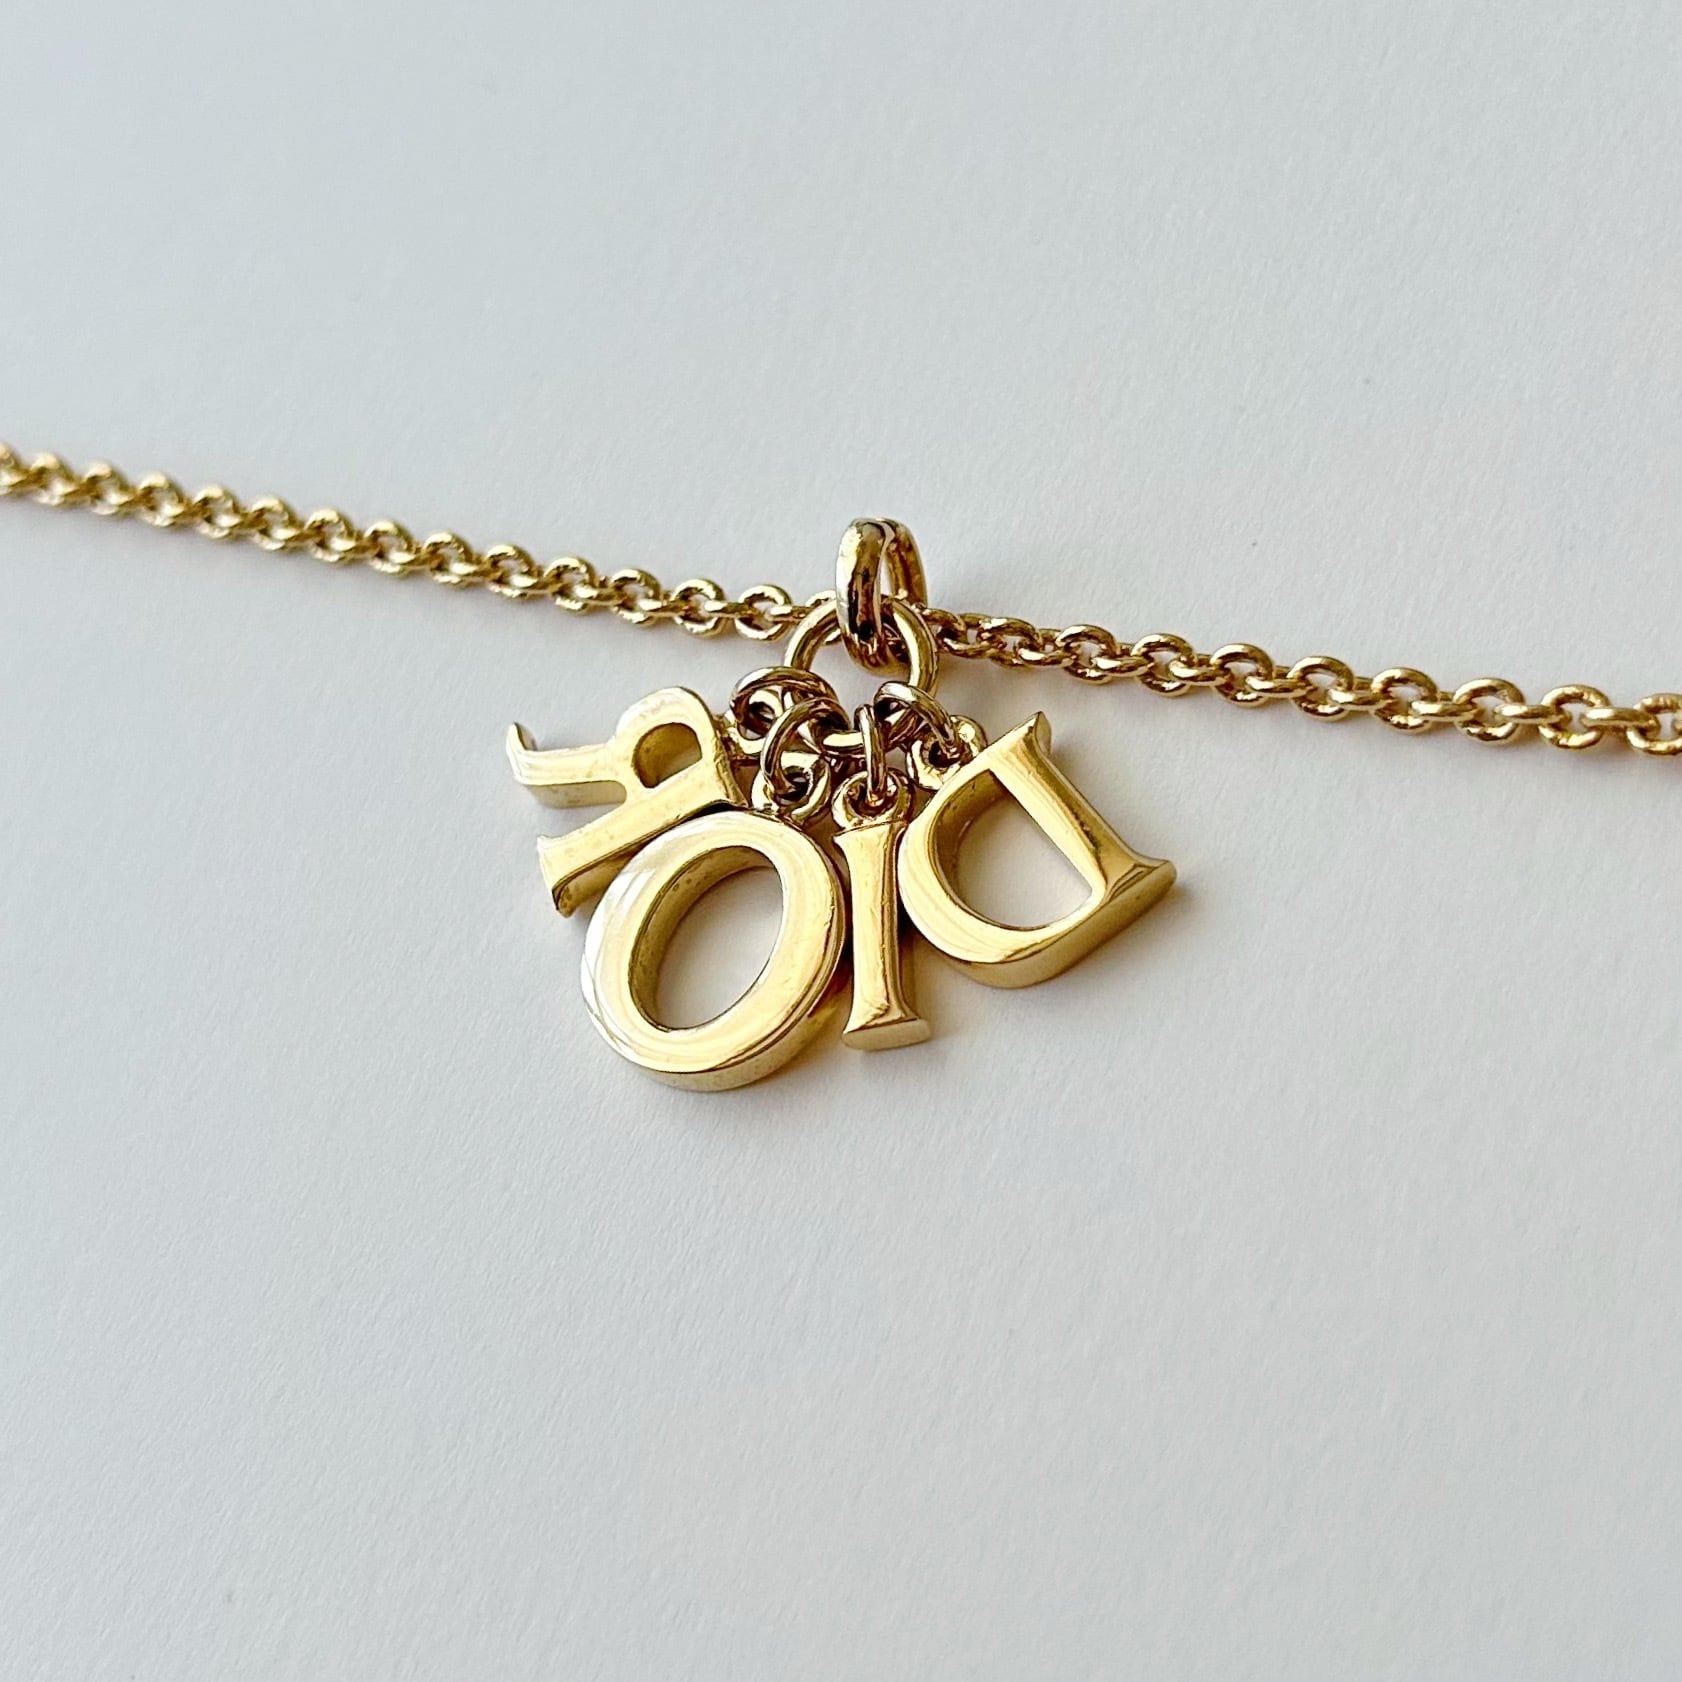 N5661】Christian Dior big logo necklace/クリスチャンディオール